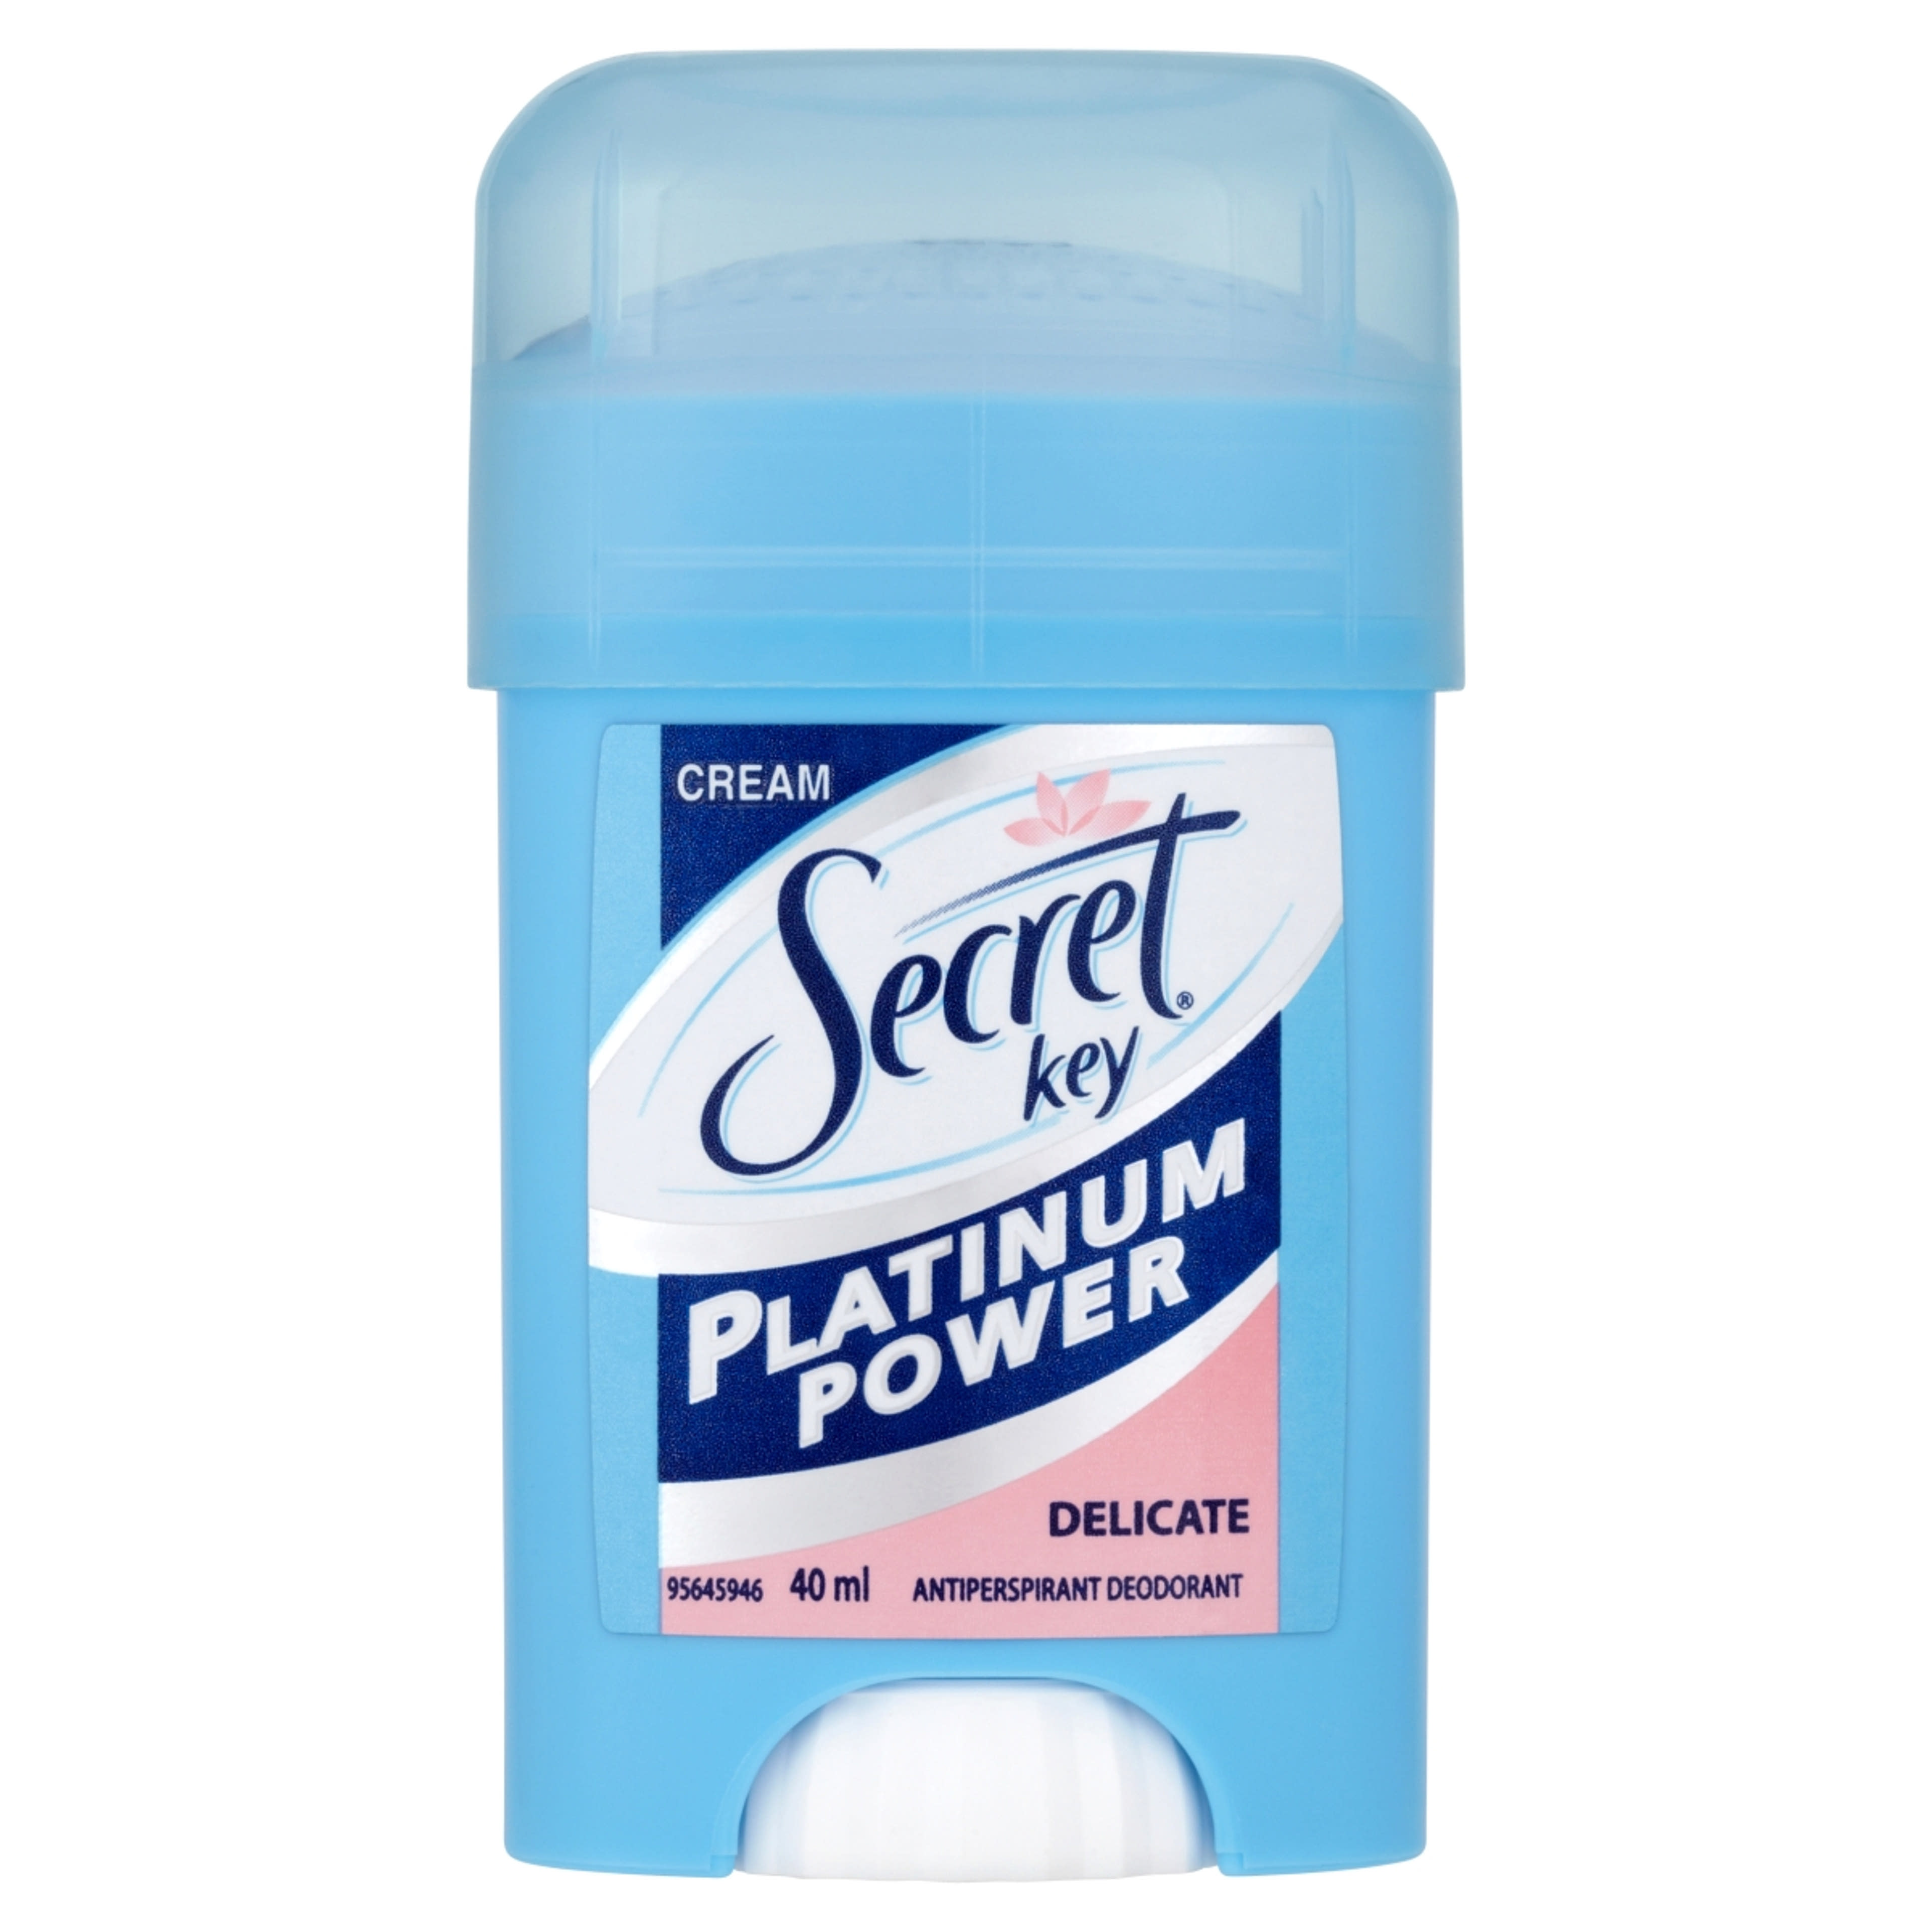 Secret Key Platinum Power Delicate női izzadásgátló krémdezodor - 40 ml